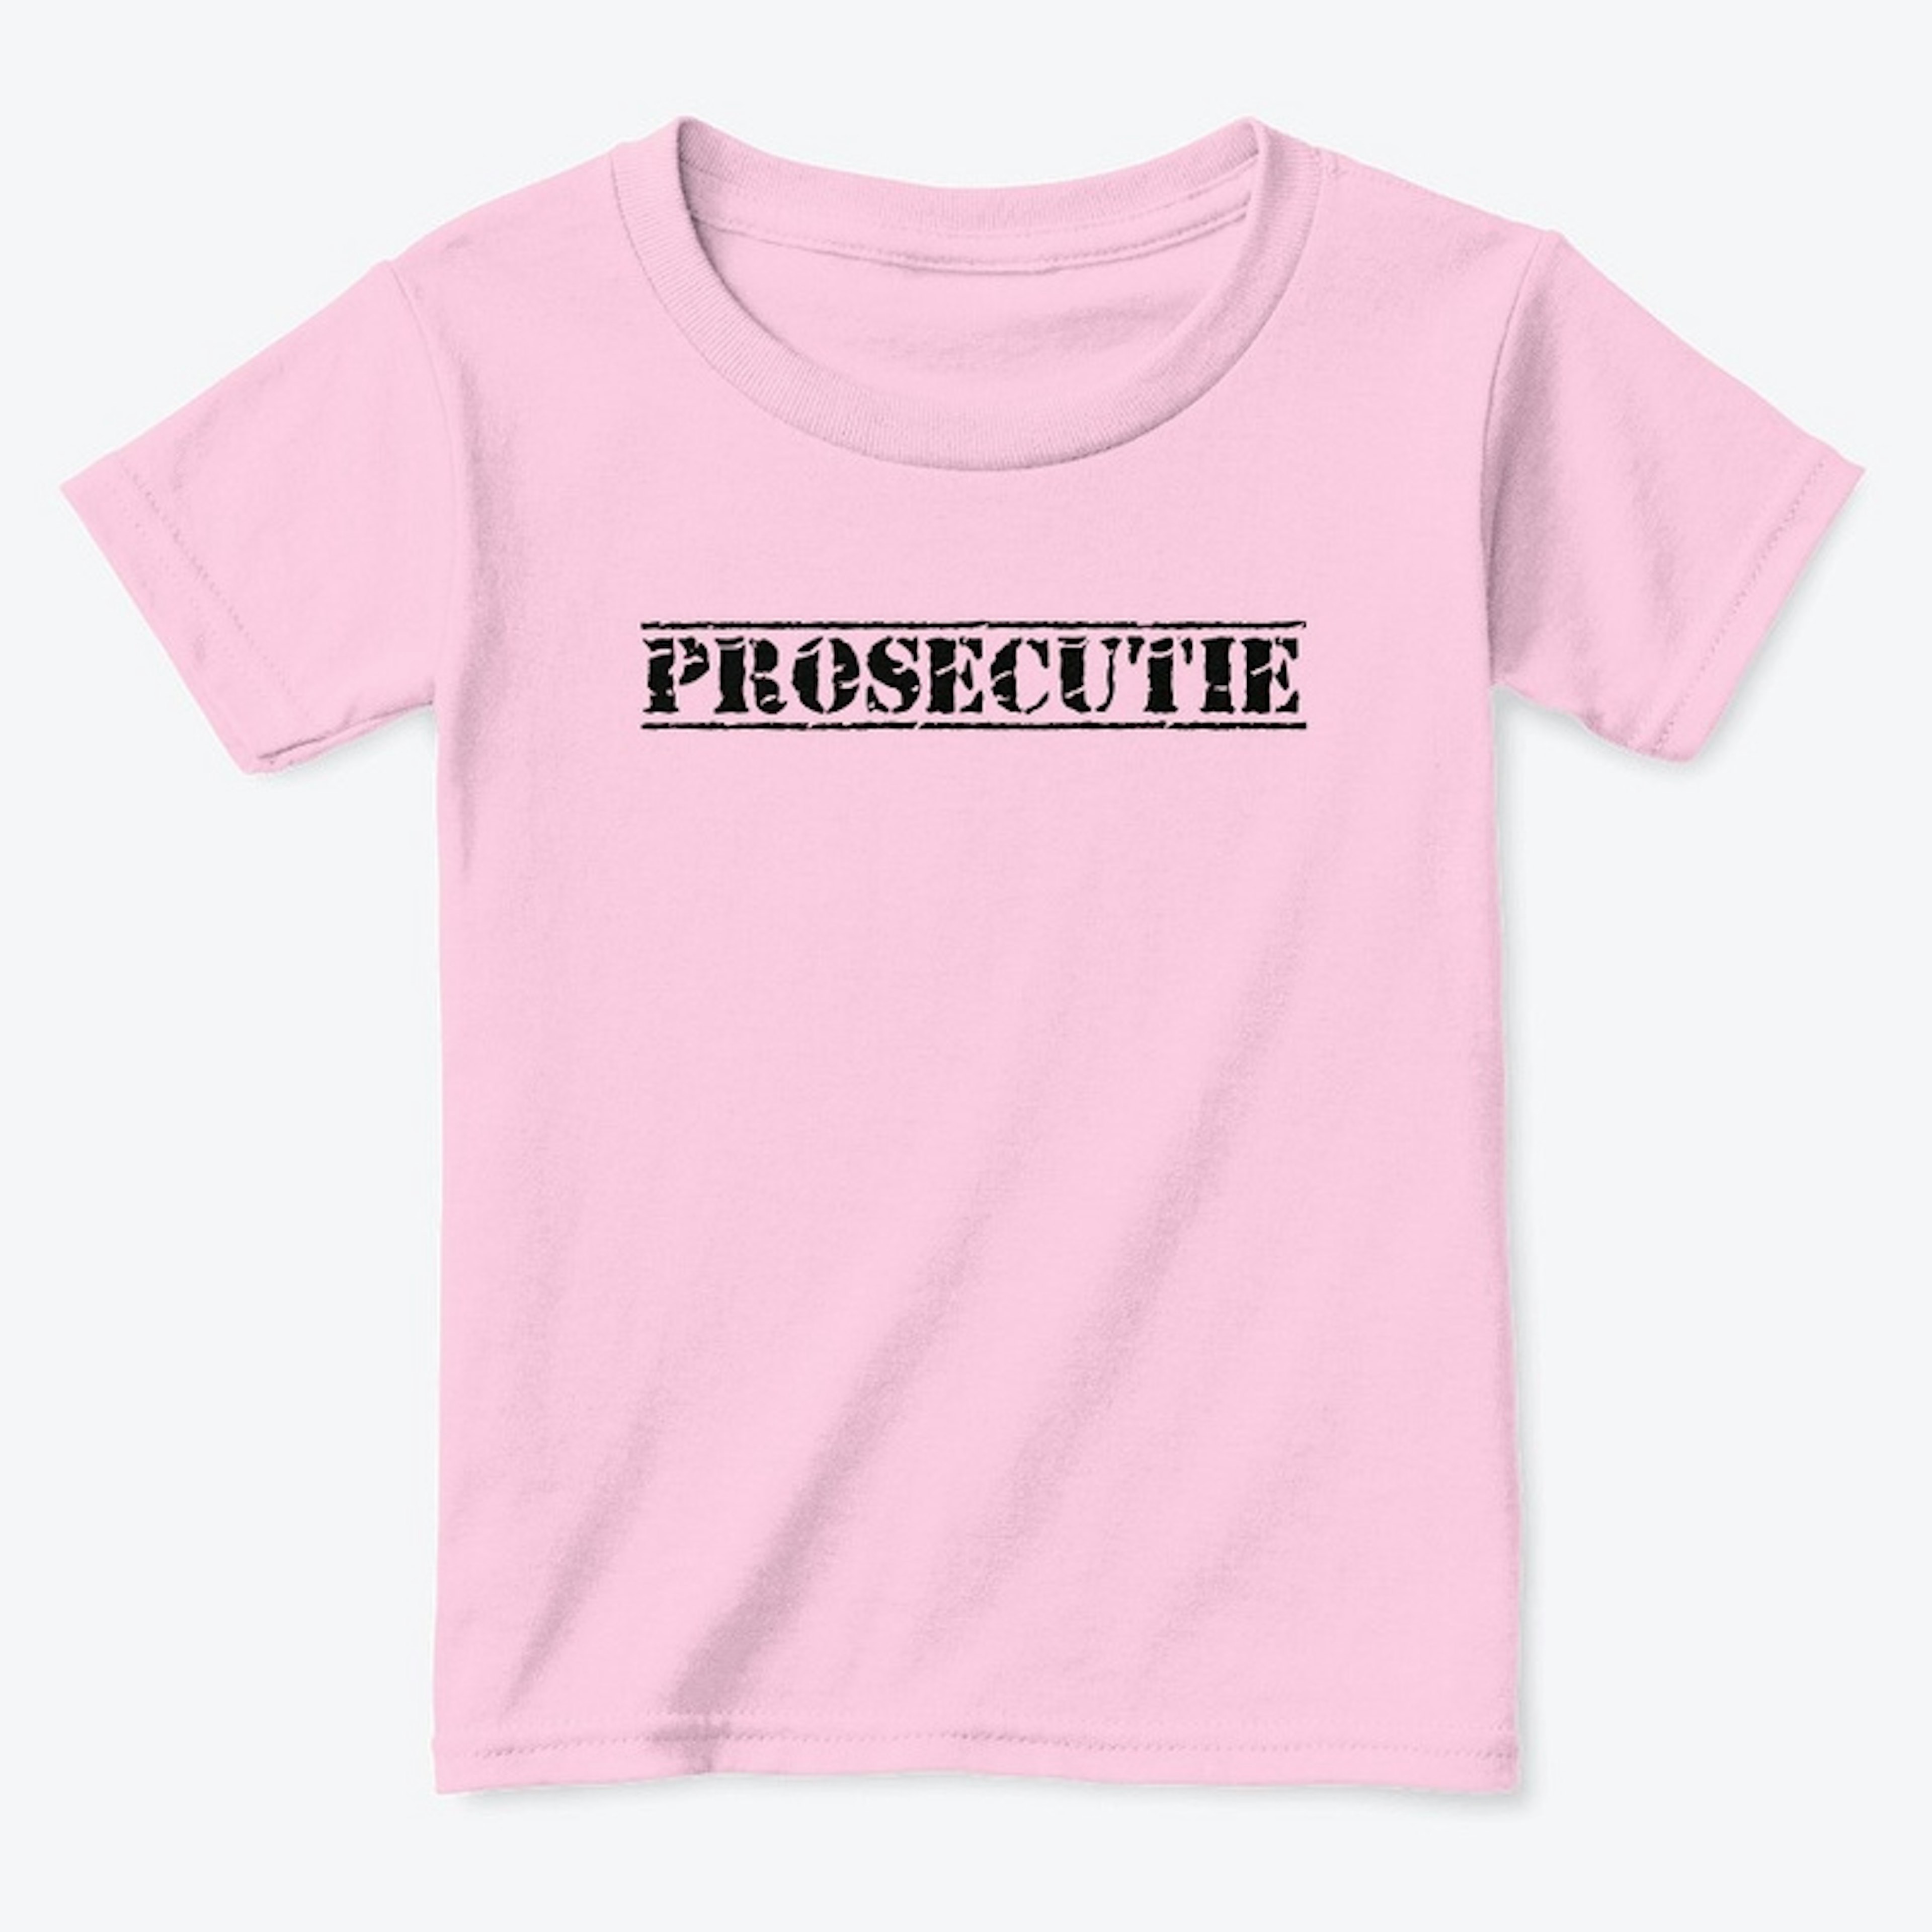 Prosecutie Kids Shirt